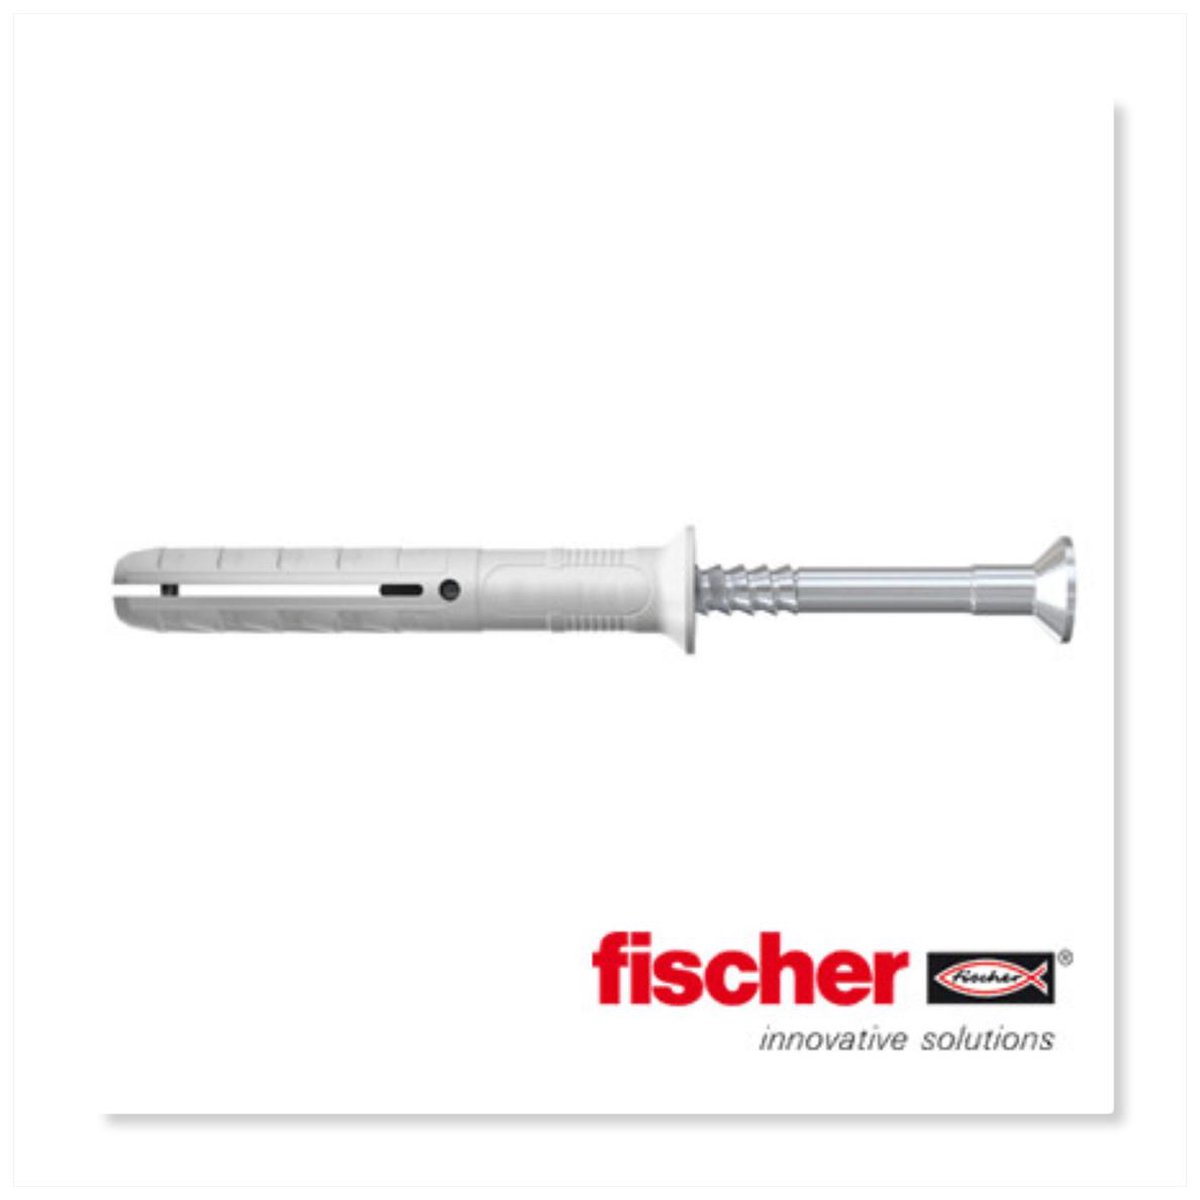 Fischer Slagplug N - 6x60 (Per 15 stuks) - Fischer